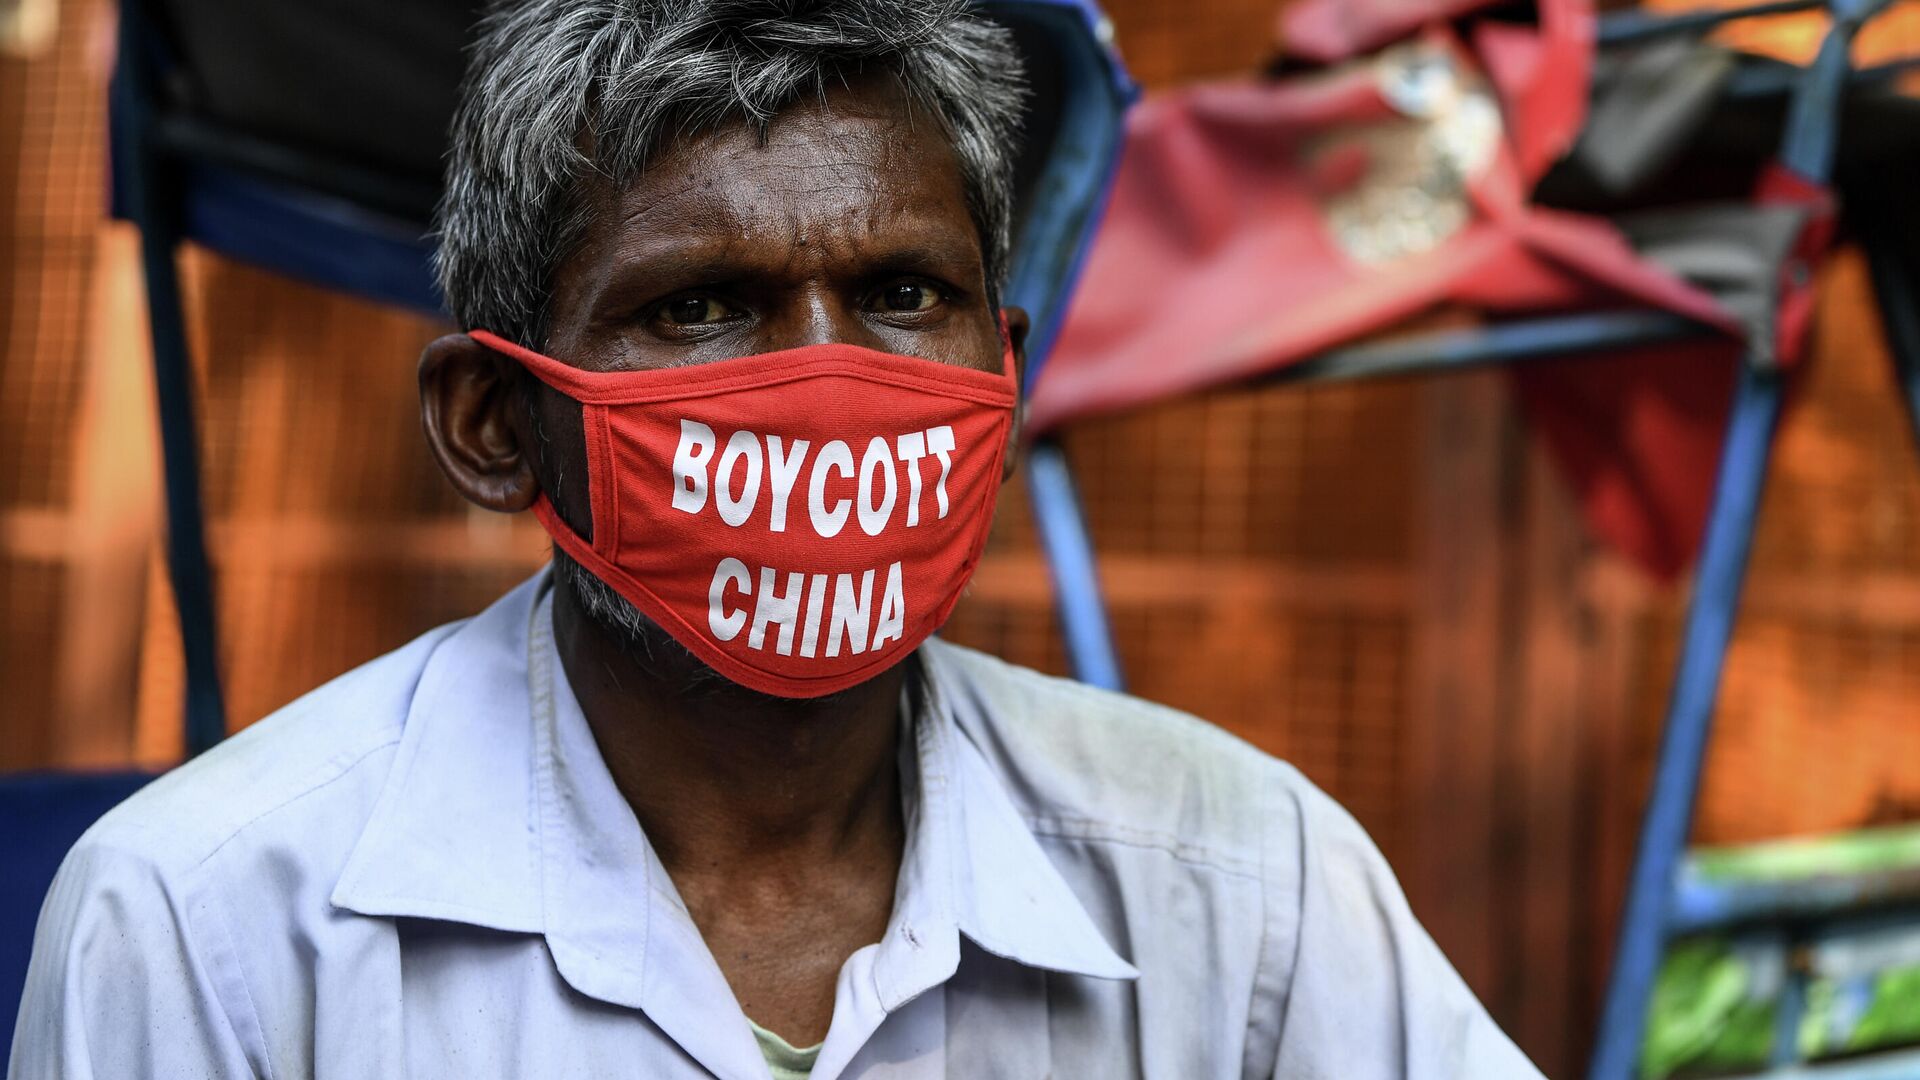 Рикша в маске с надписью Бойкот Китаю в Нью-Дели, Индия  - РИА Новости, 1920, 05.08.2020